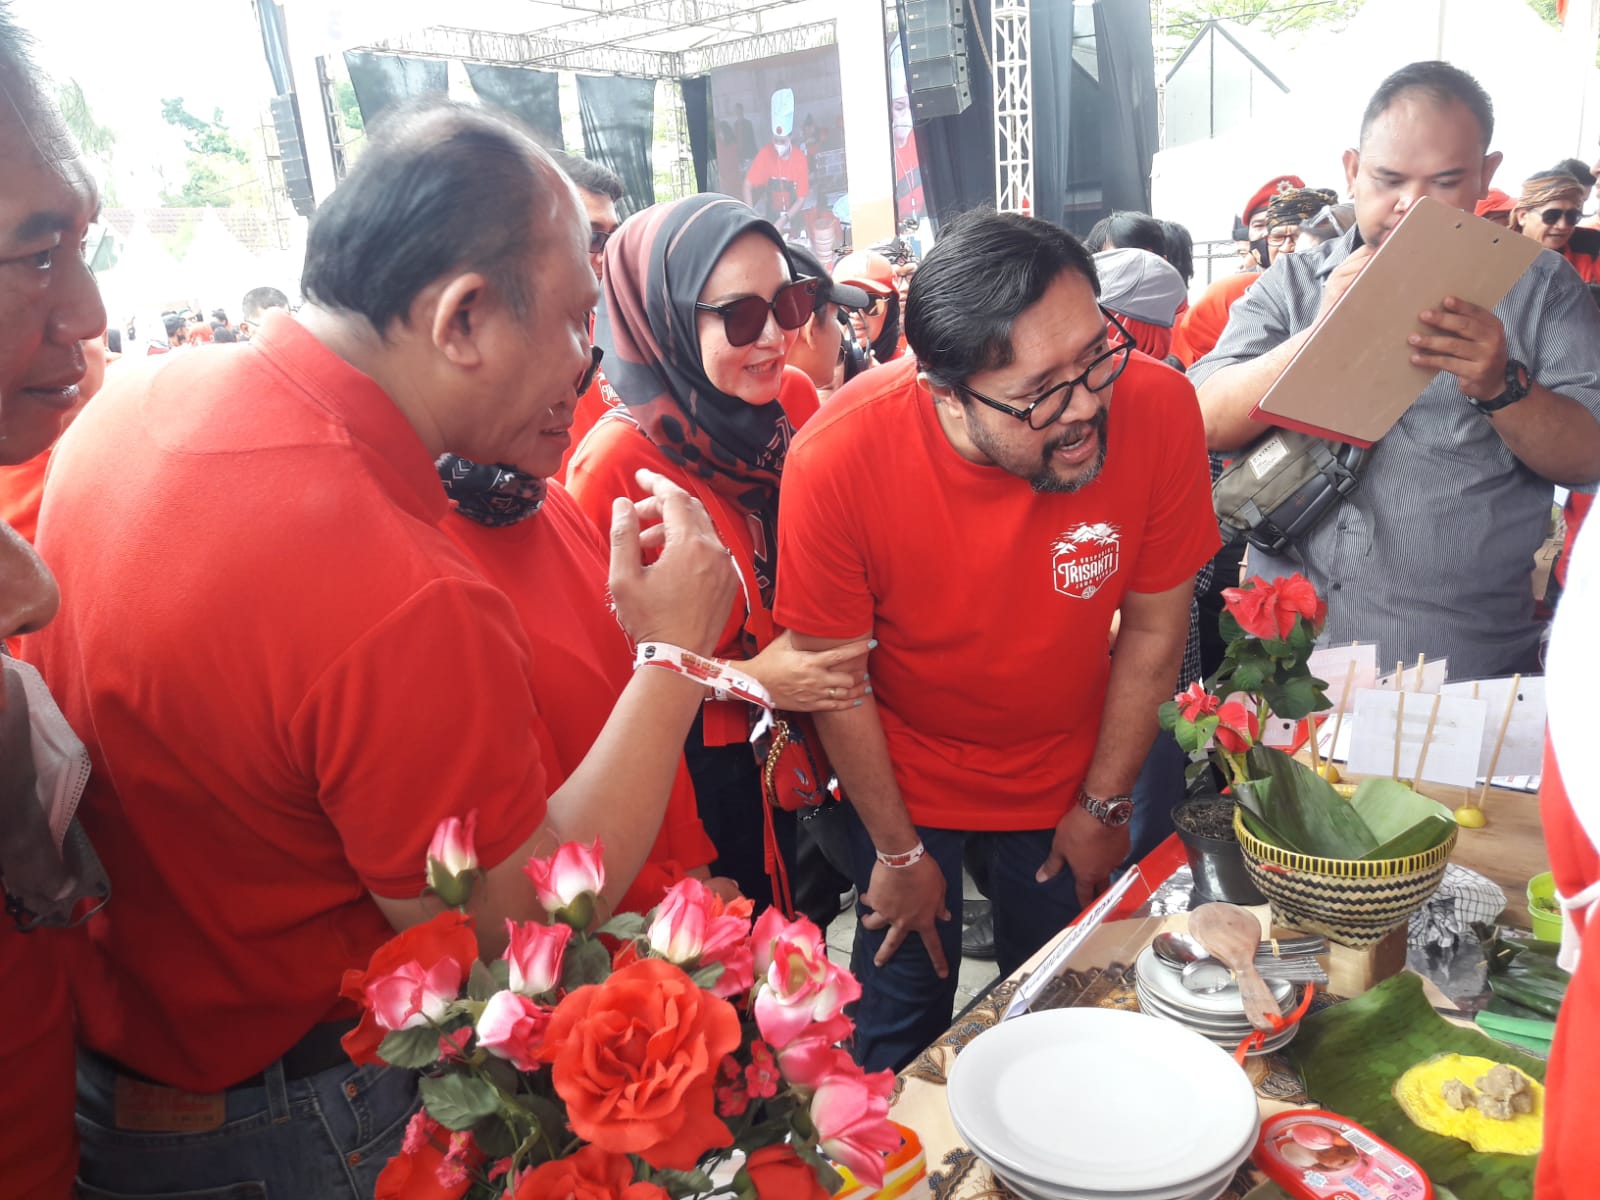 SUPPORT PESERTA: Ketua DPD PDIP Jabar Ono Surono memberikan semangat kepada para peserta Gebyar dan Lomba Inovasi Menu Berbasis Pangan Lokal tingkat Jabar di Kiara Artha Park Jalan Banten Kota Bandung, Minggu (2/10).